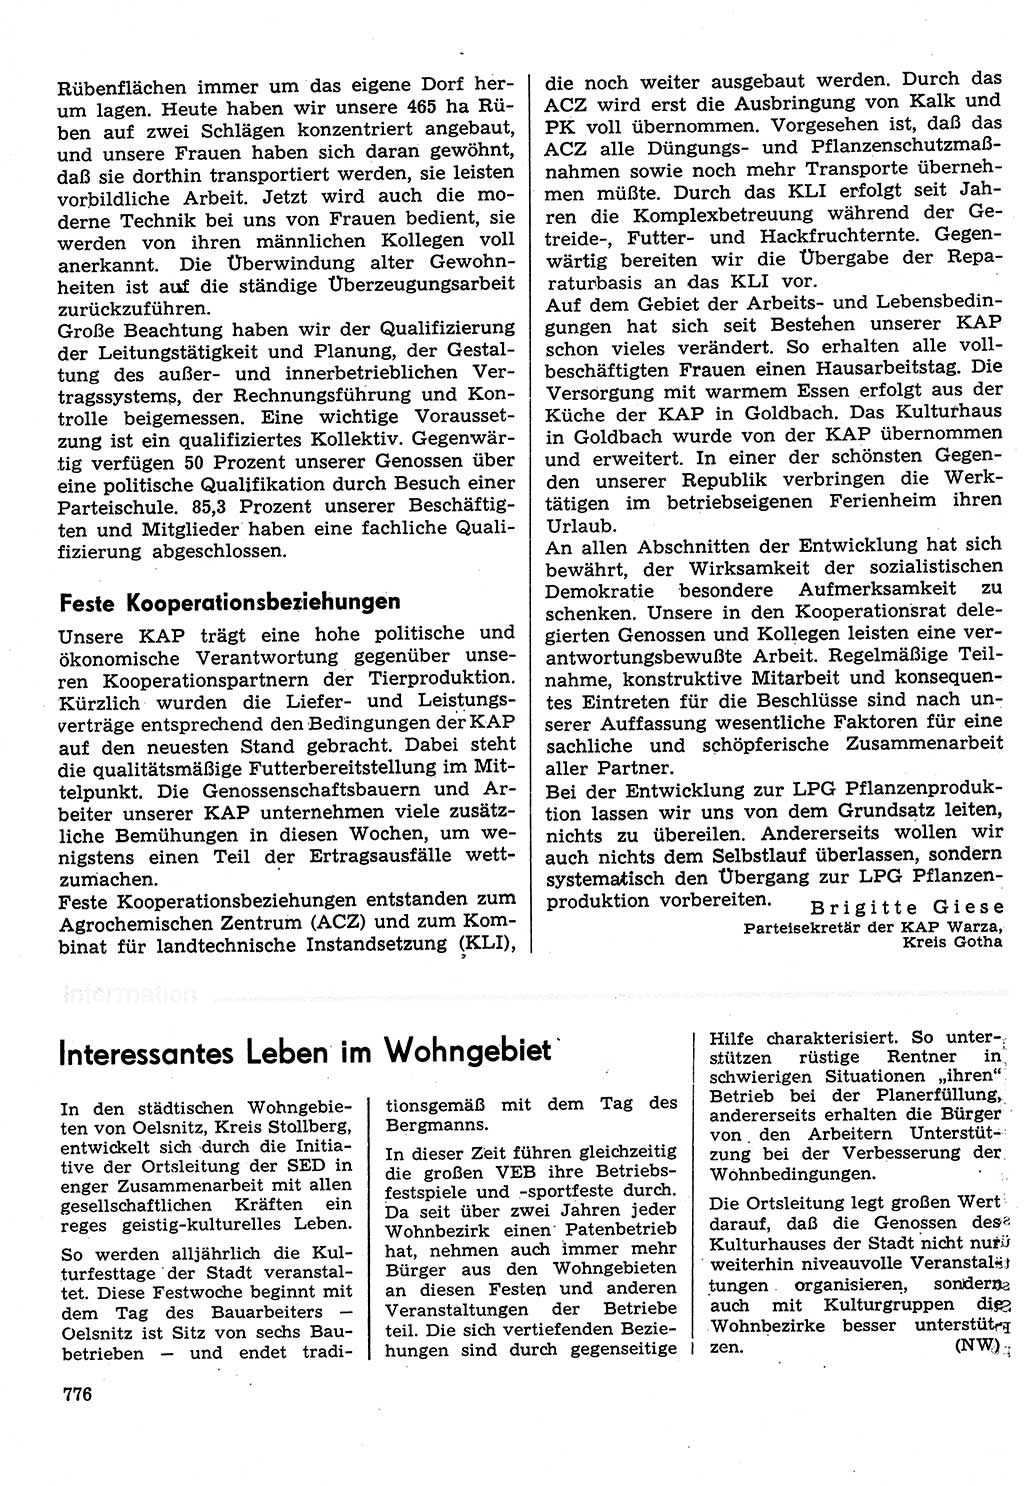 Neuer Weg (NW), Organ des Zentralkomitees (ZK) der SED (Sozialistische Einheitspartei Deutschlands) für Fragen des Parteilebens, 31. Jahrgang [Deutsche Demokratische Republik (DDR)] 1976, Seite 776 (NW ZK SED DDR 1976, S. 776)